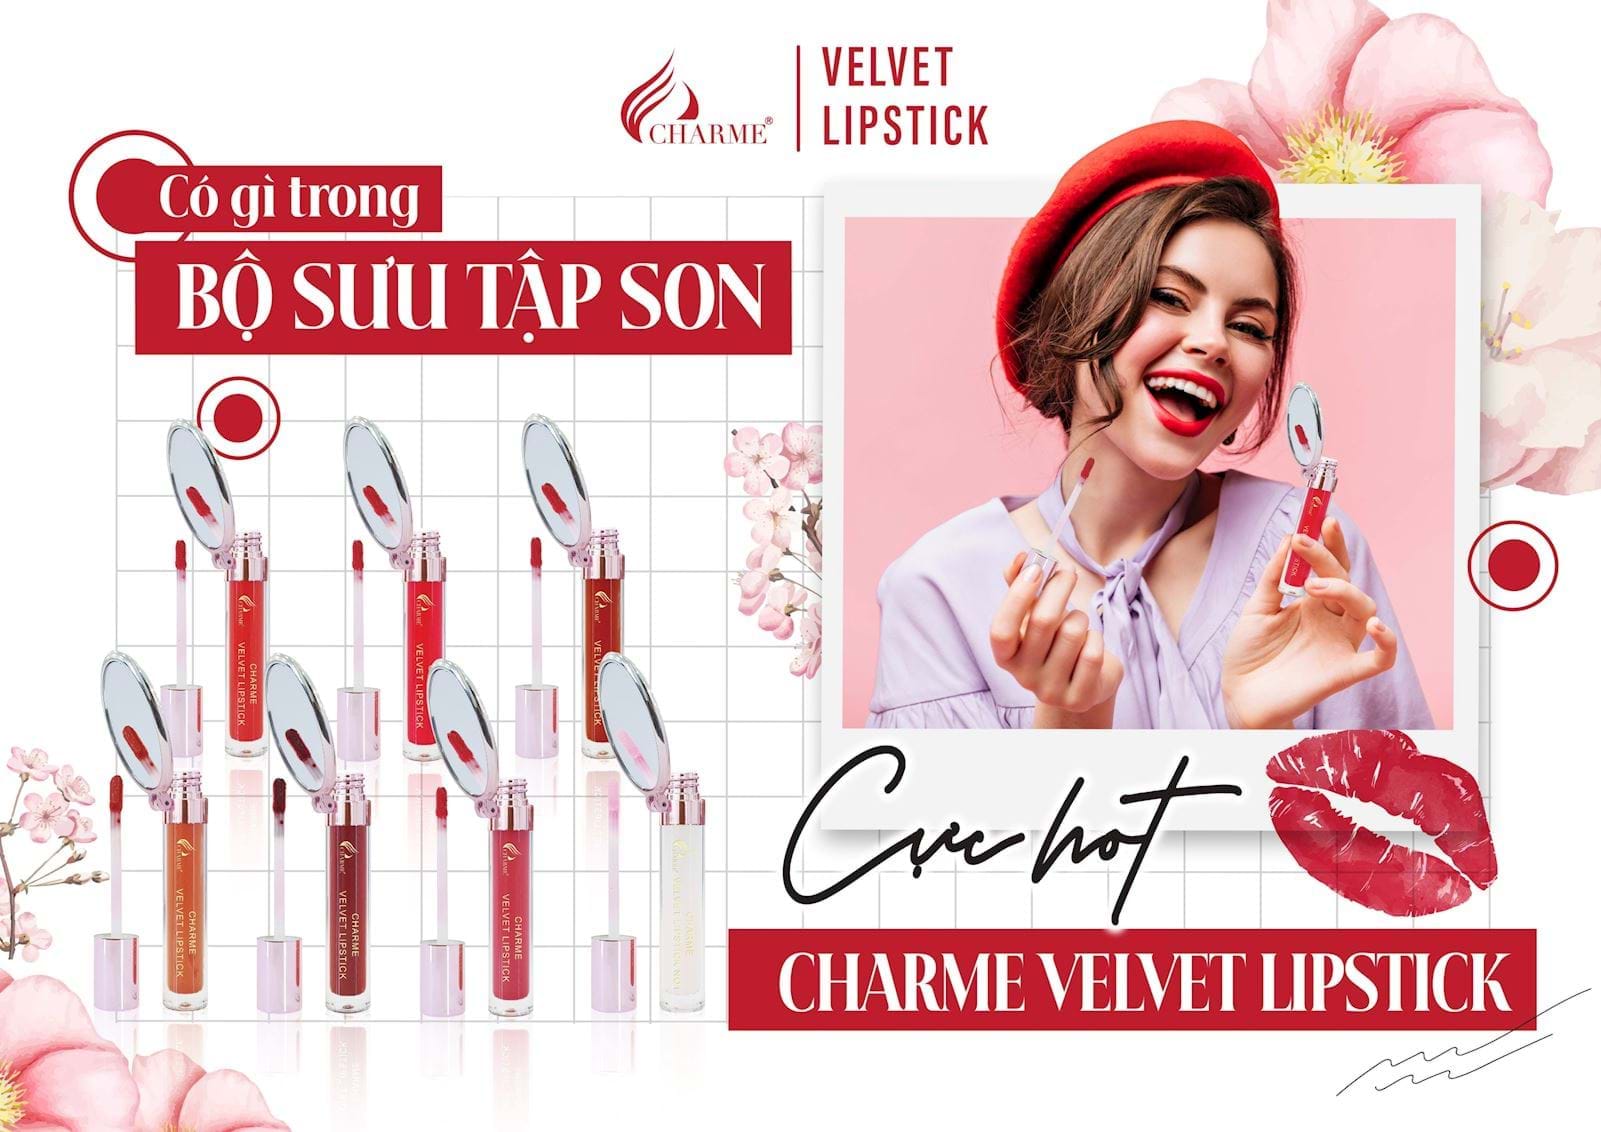 Có Gì Trong Bộ Sưu Tập Son Cực Hot Charme Velvet Lipstick?